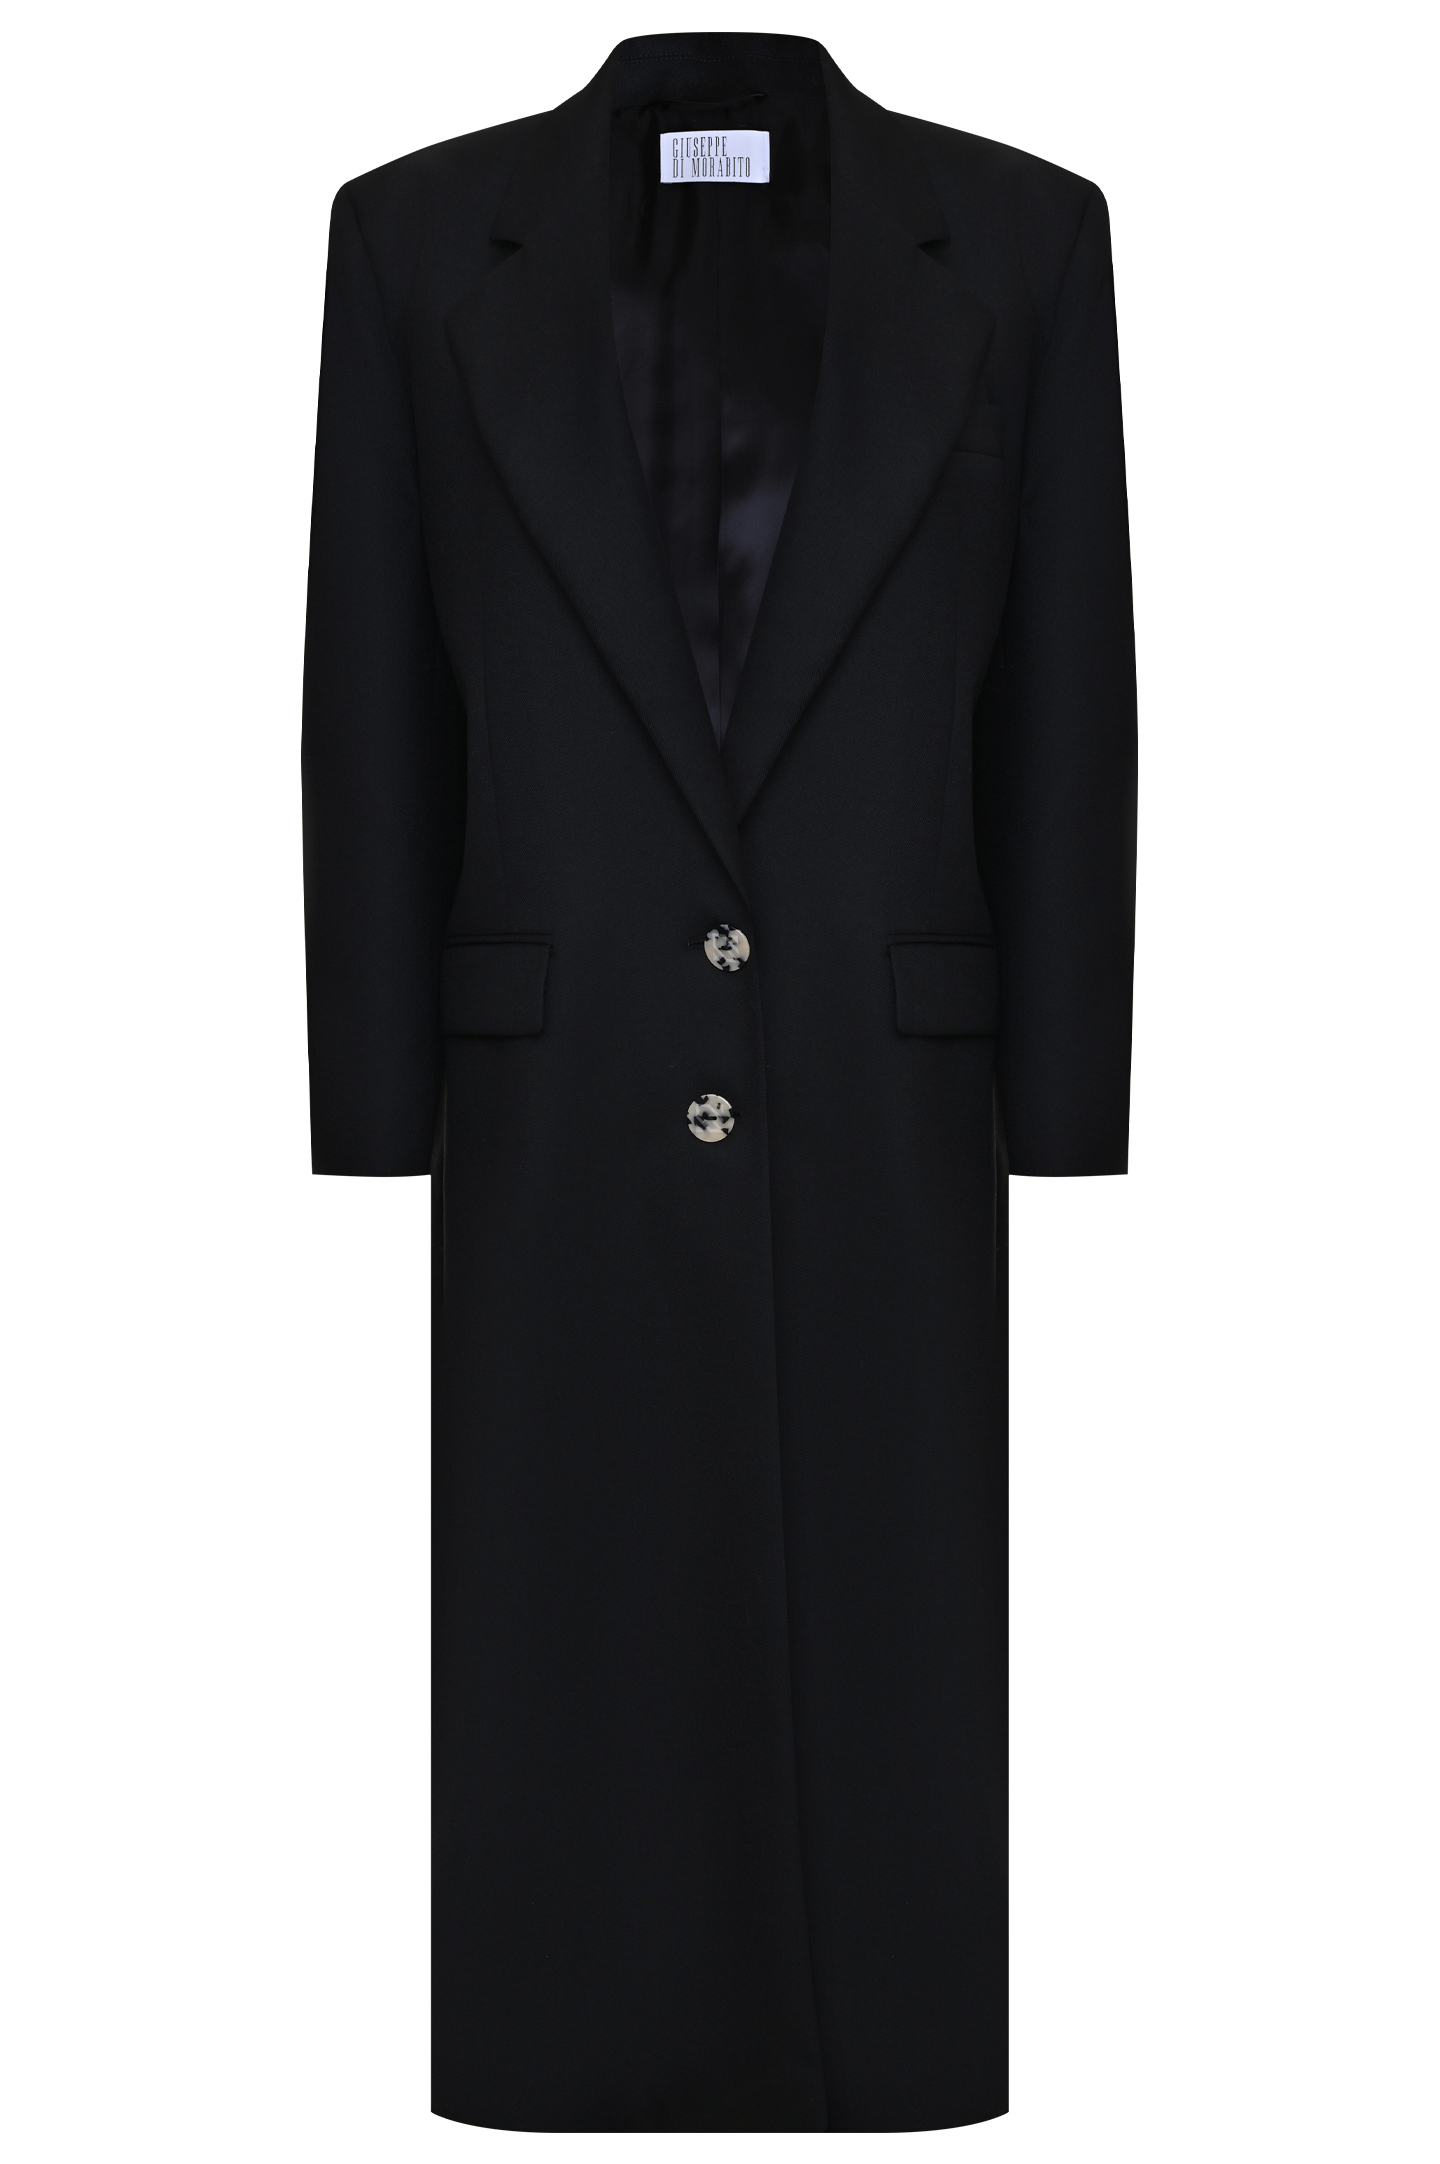 Пальто GIUSEPPE DI MORABITO FW22030CO-193, цвет: Черный, Женский